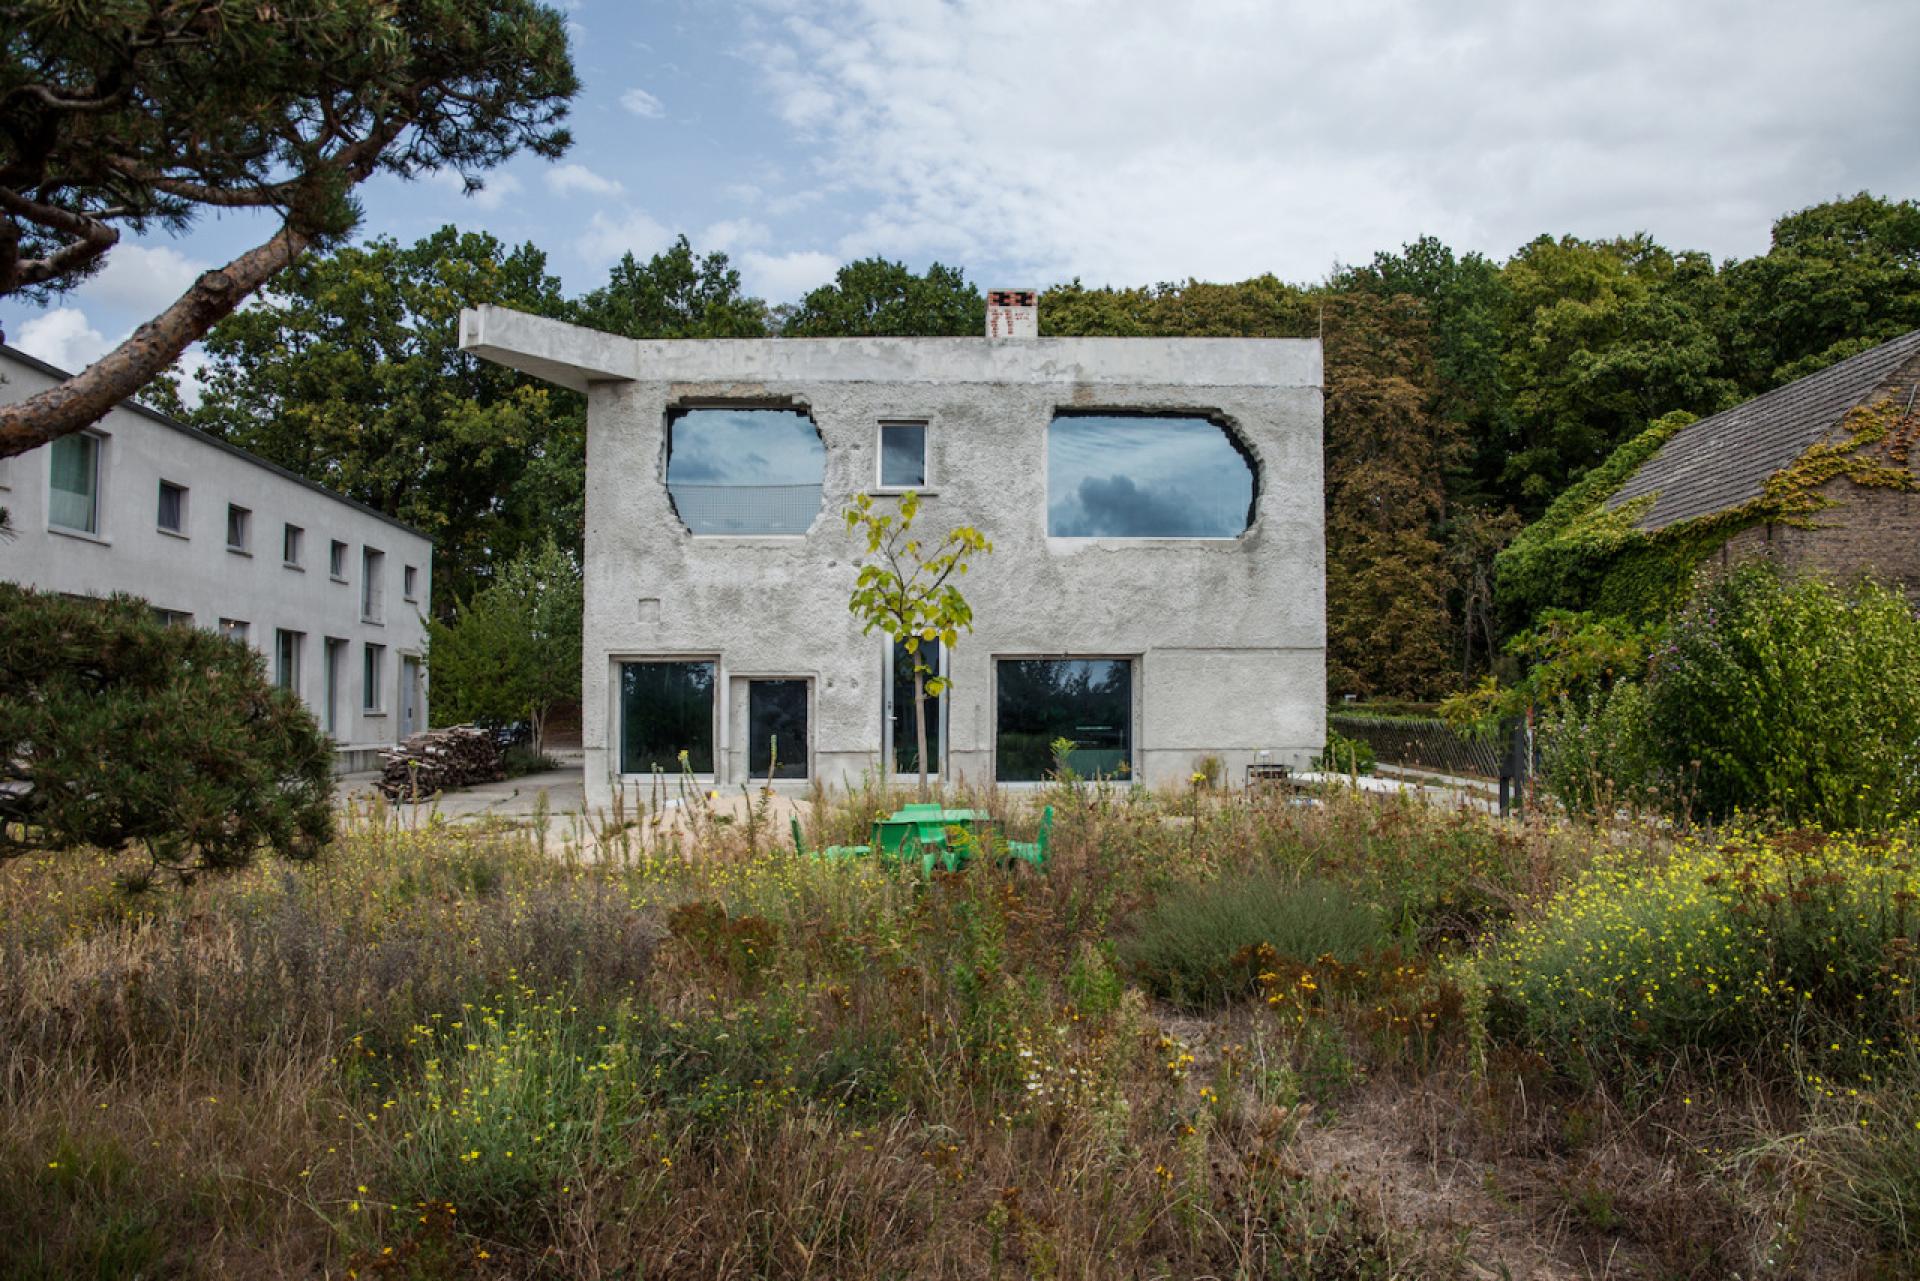 Anti-Villa by Arno Brandlhuber + Markus Emde and Thomas Schnieder, Krampnitz lake near Potsdam, (2010-2015).